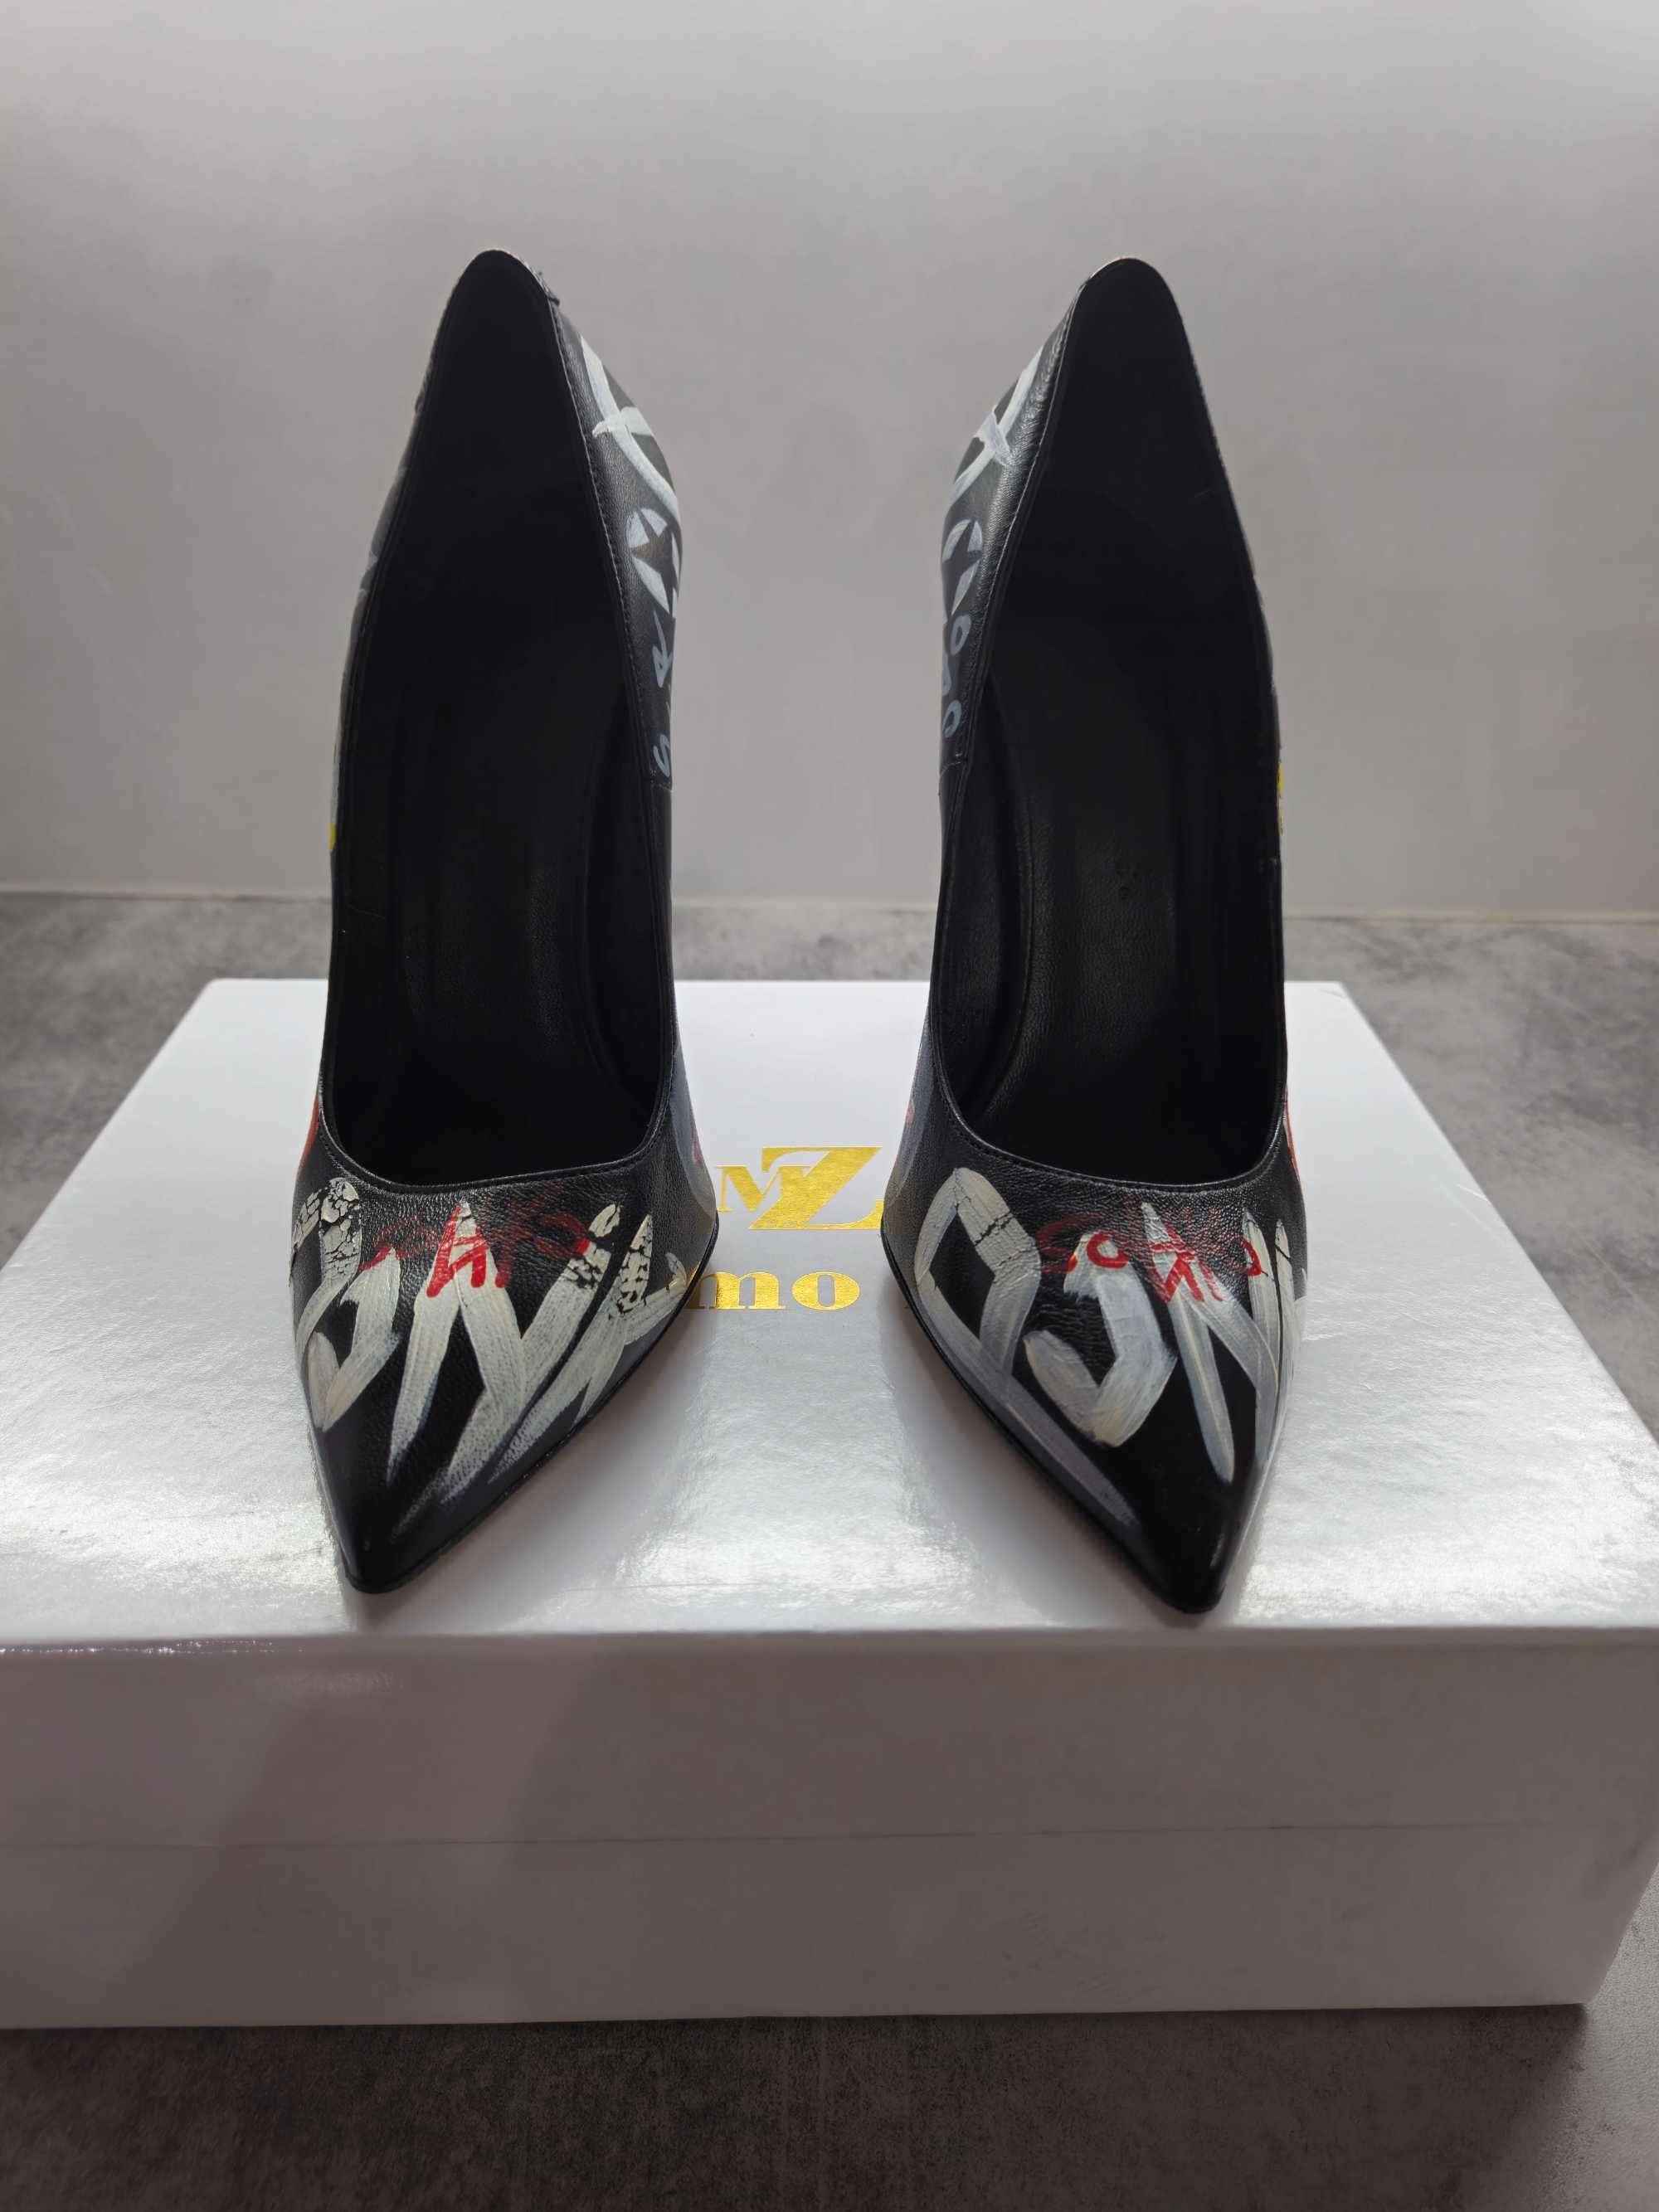 Дамски обувки Massimo Zardi eu 38